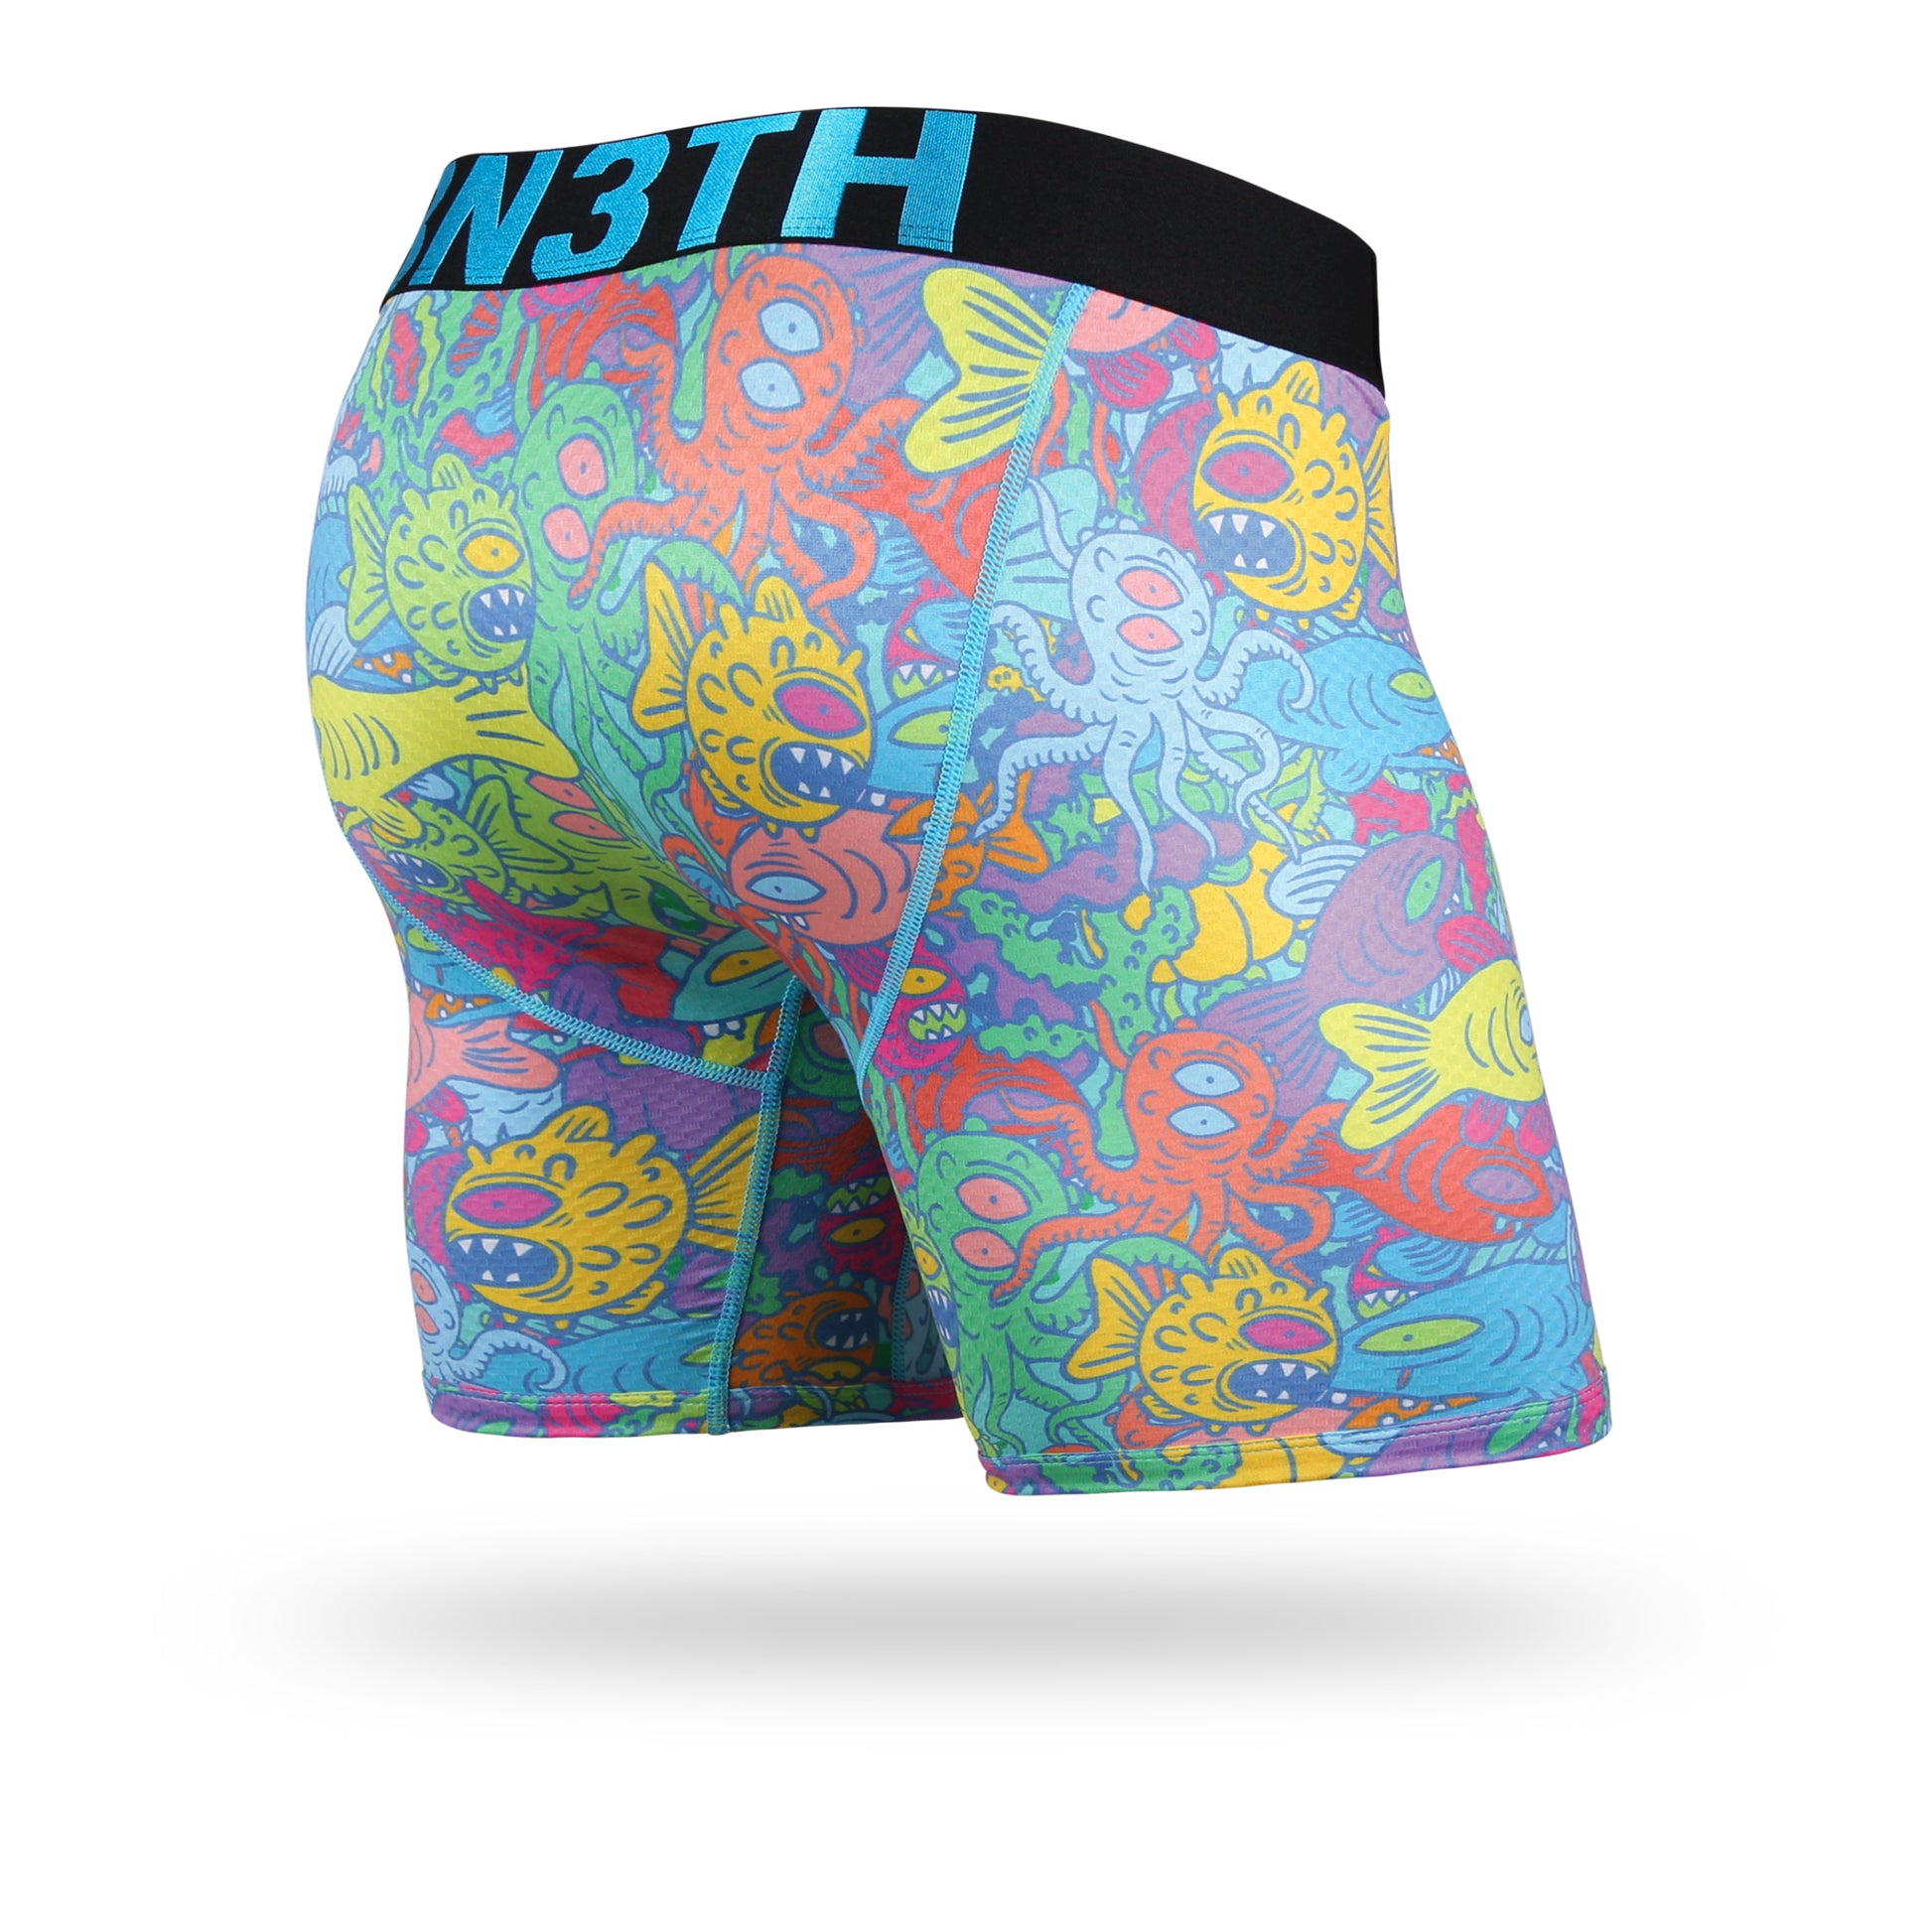 BN3TH Underwear for Men